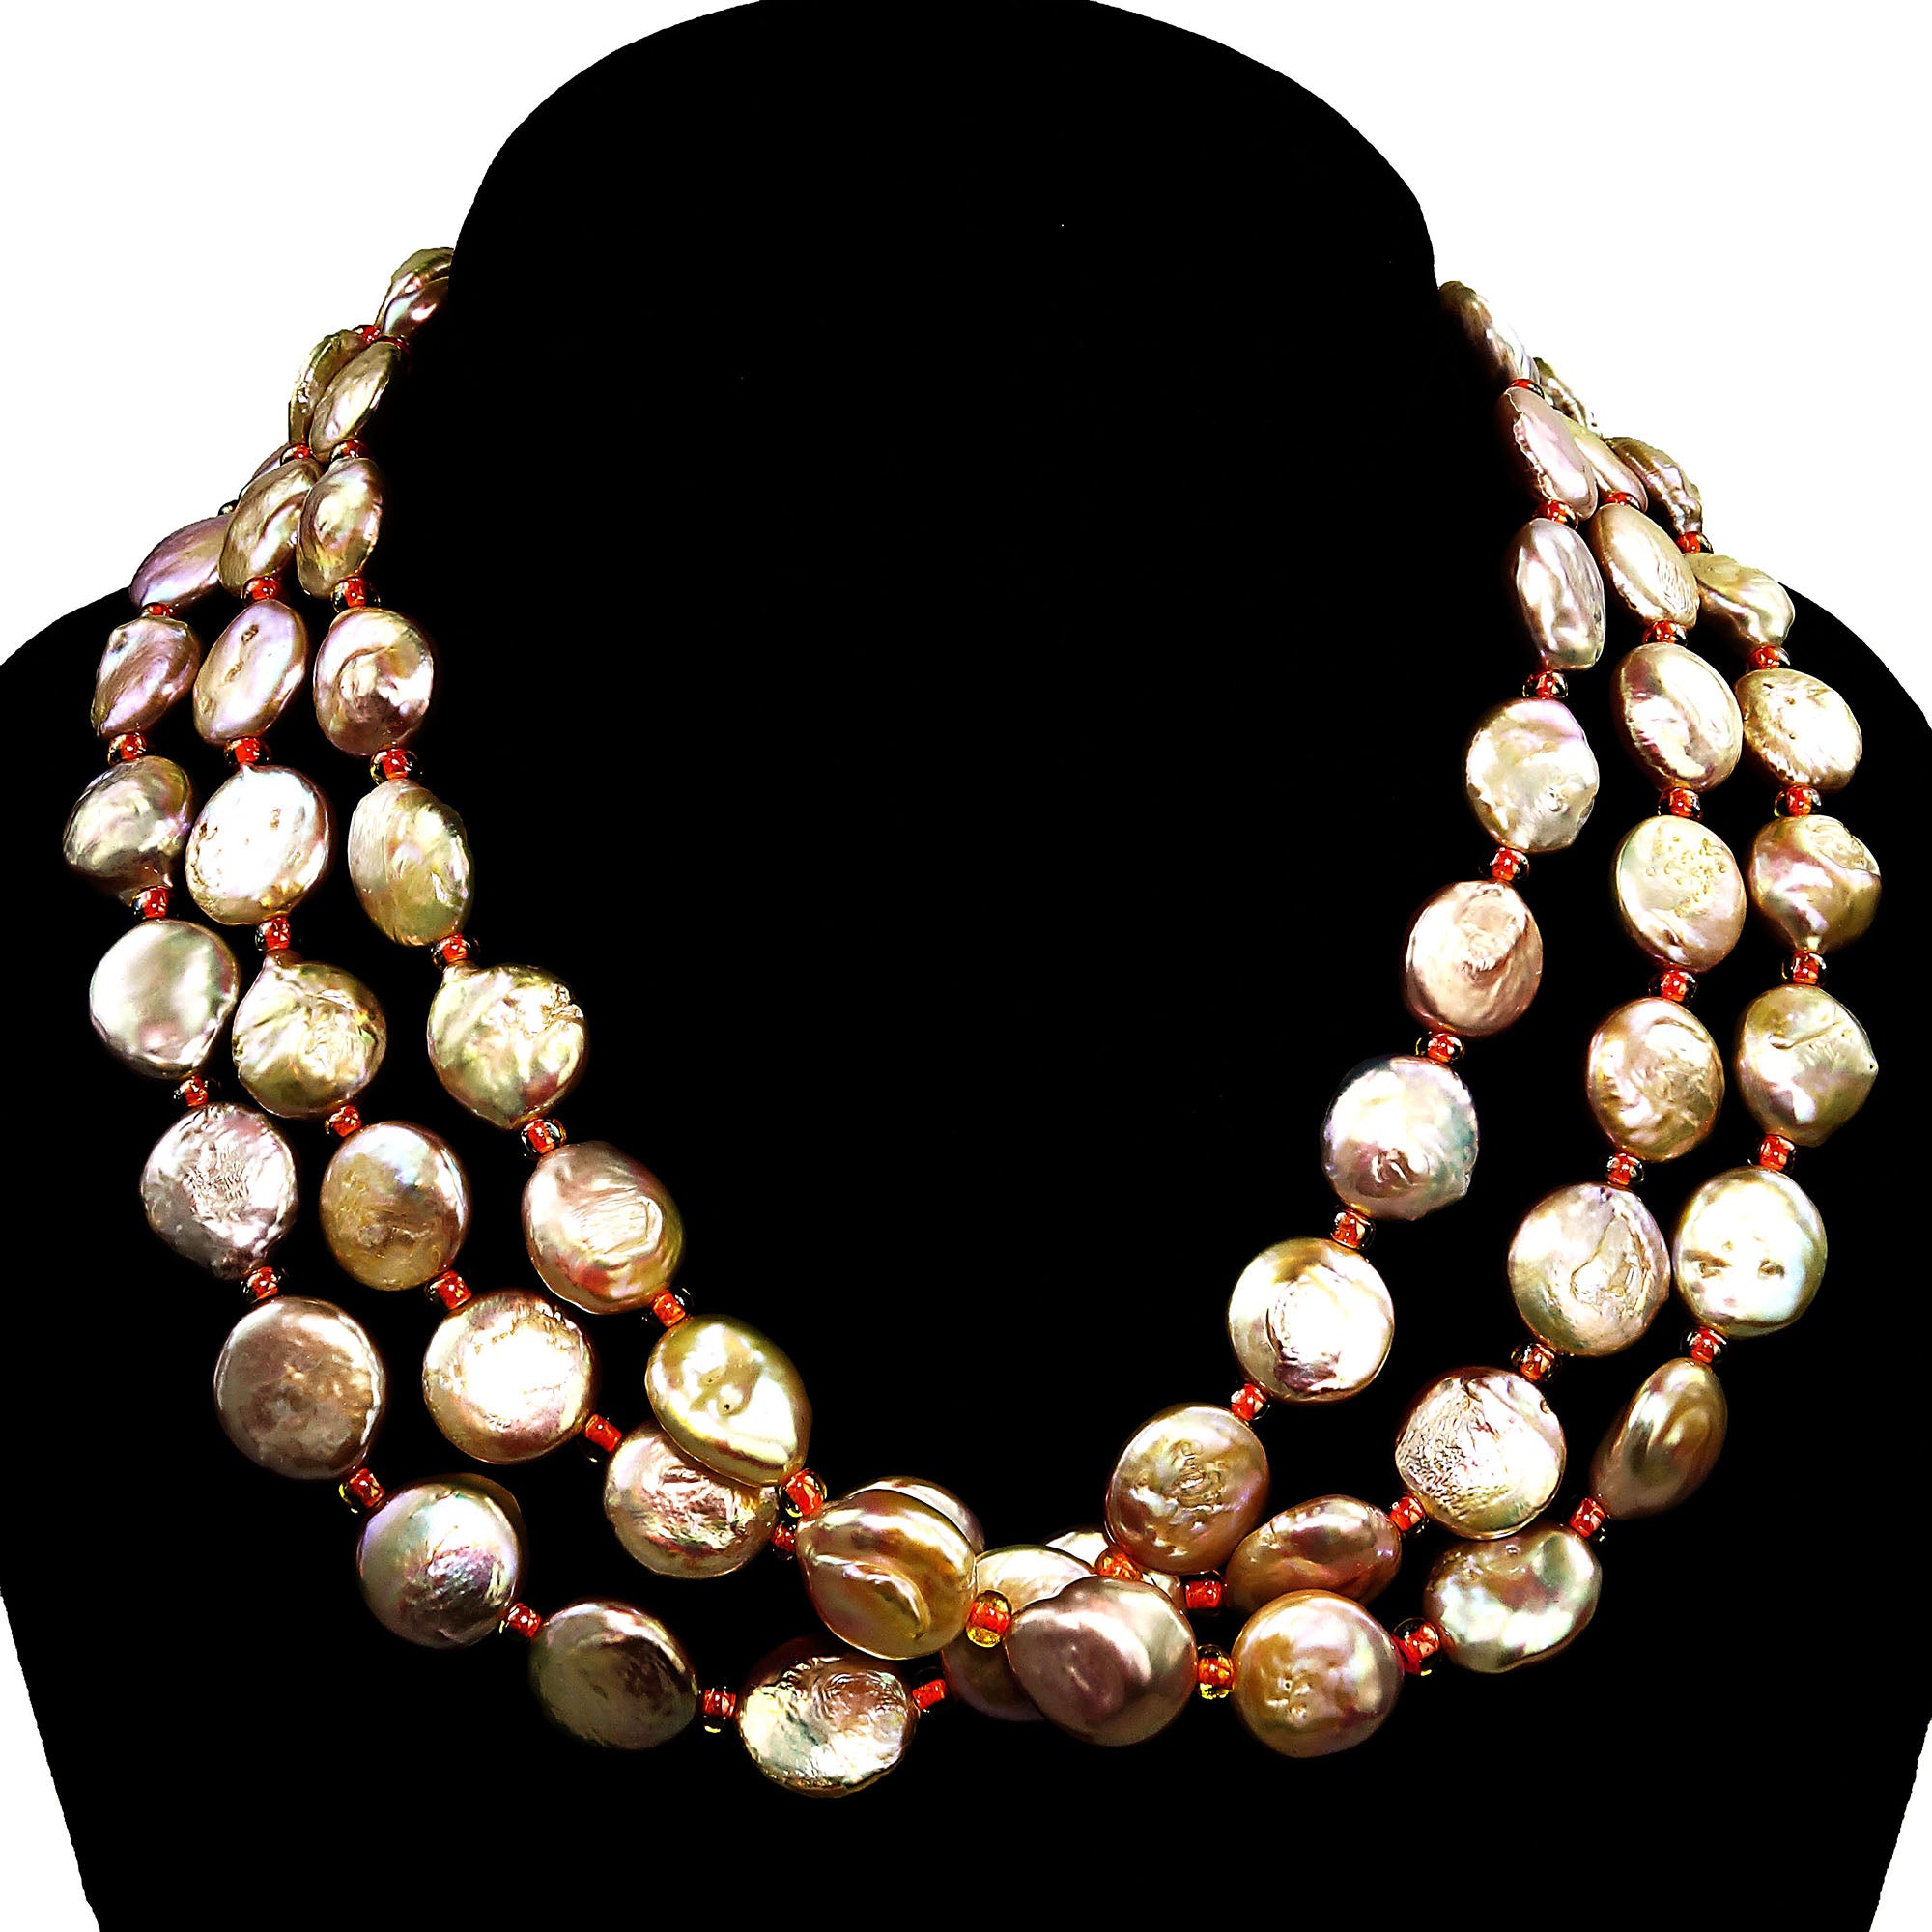 AJD - Collier à trois rangs de perles en forme de pièce de monnaie, couleur pêche/rose (pierre de naissance de juin)  Excellent cadeau